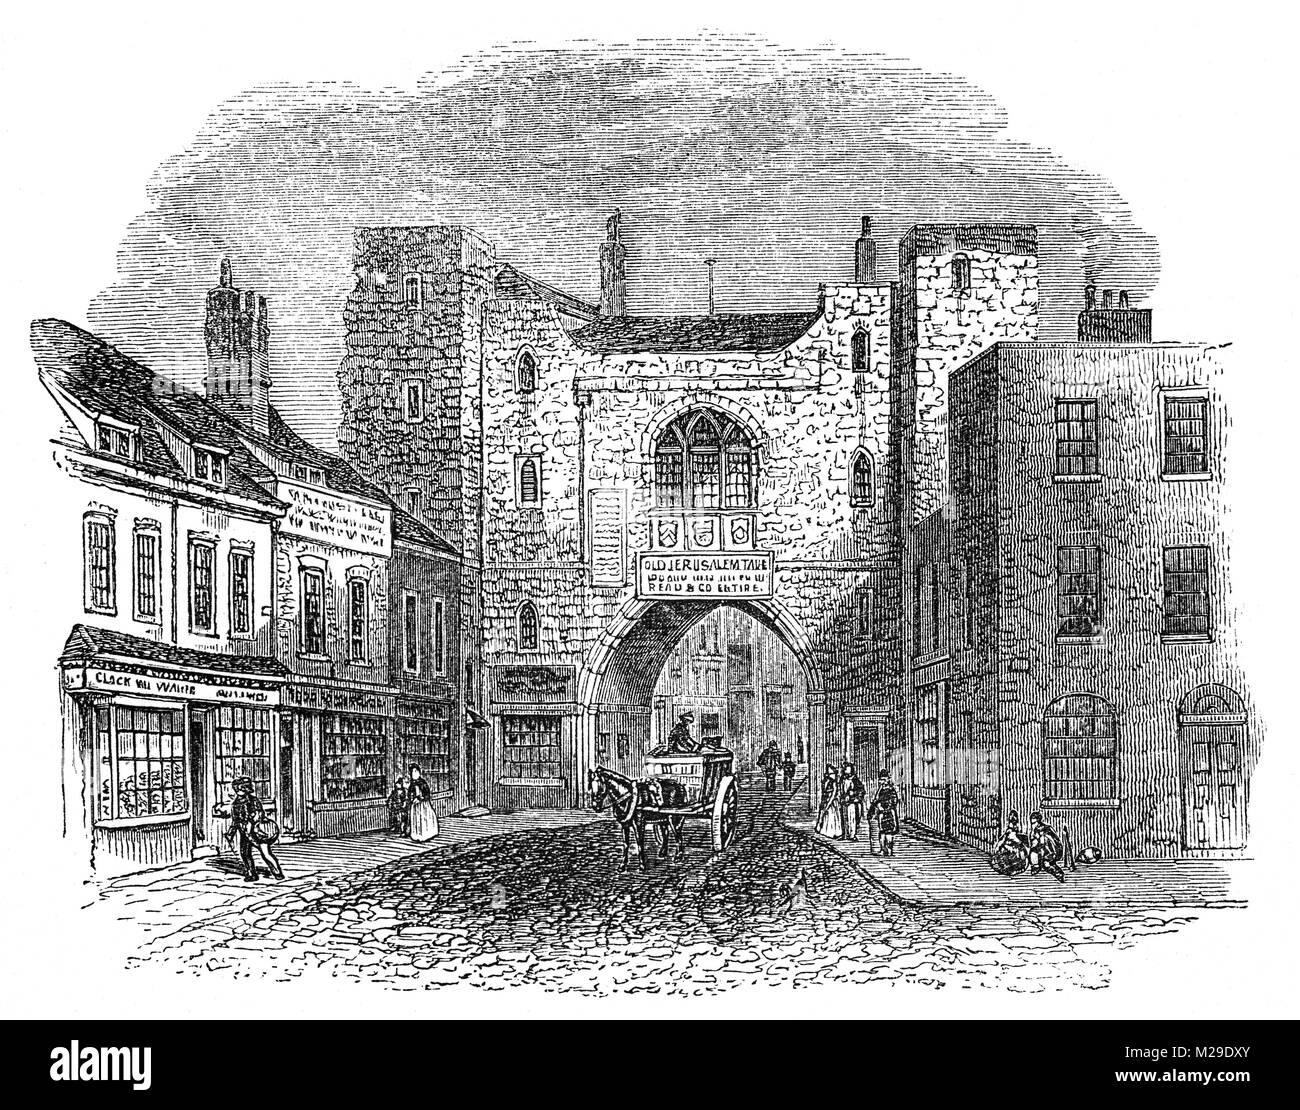 St John's Gate, nella zona di Clerkenwell di Londra è uno dei pochi resti tangibili da Clerkenwell è passato monastica. È stato costruito nel 1504 dal Priore Thomas Docwra come l'entrata sud del distretto interna di Clerkenwell Priory, il priorato dei cavalieri di San Giovanni (noto come i Cavalieri Ospitalieri). Dal 1701 al 1709, è stata la casa d'infanzia del pittore William Hogarth quando suo padre Richard ha aperto una casa di caffè vi, "Hogarth's Coffee House', che offre lezioni di Latino insieme con il caffè. Foto Stock